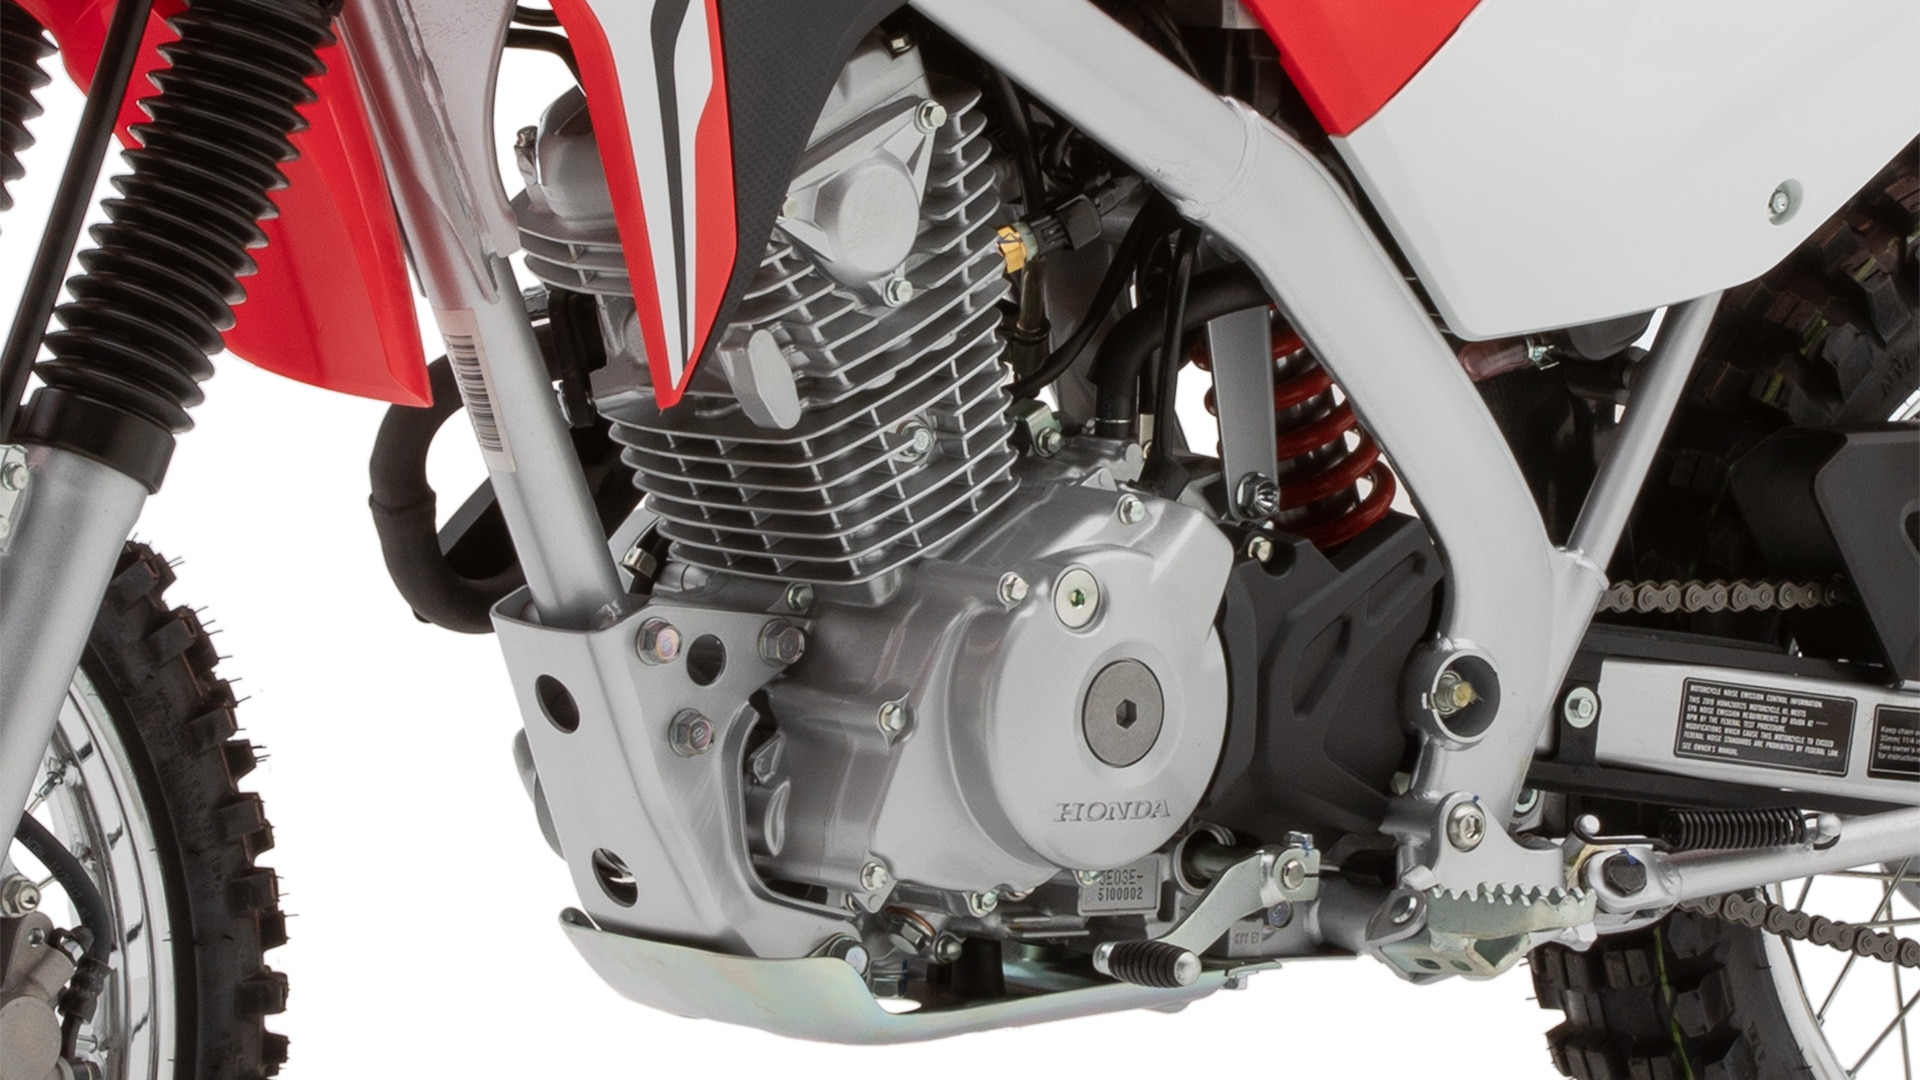 honda 125cc engine